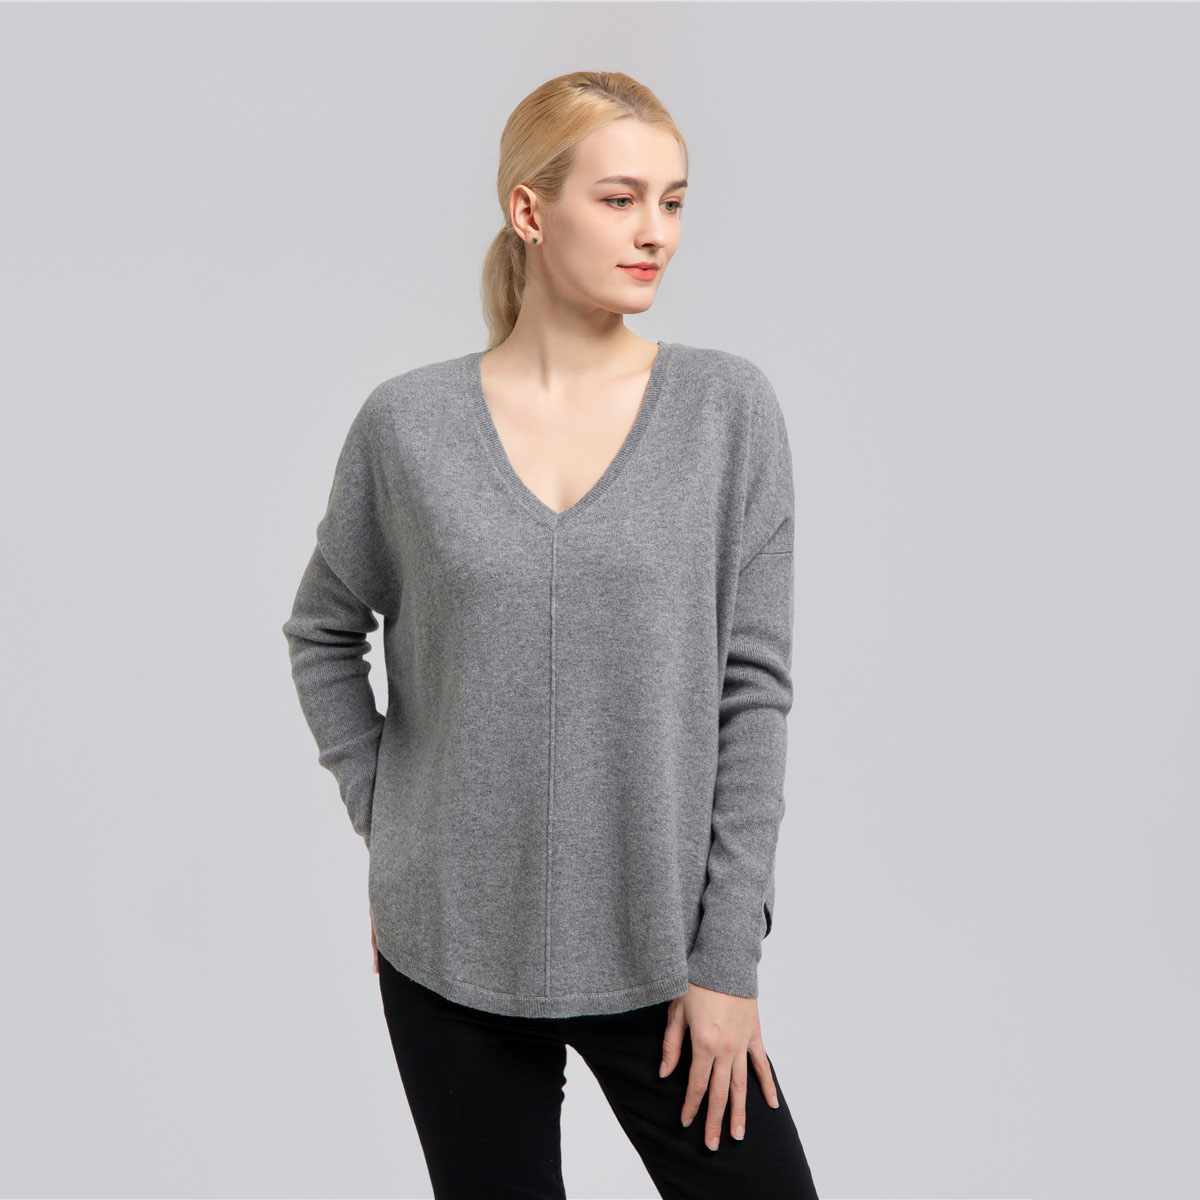 woolen sweater for ladies